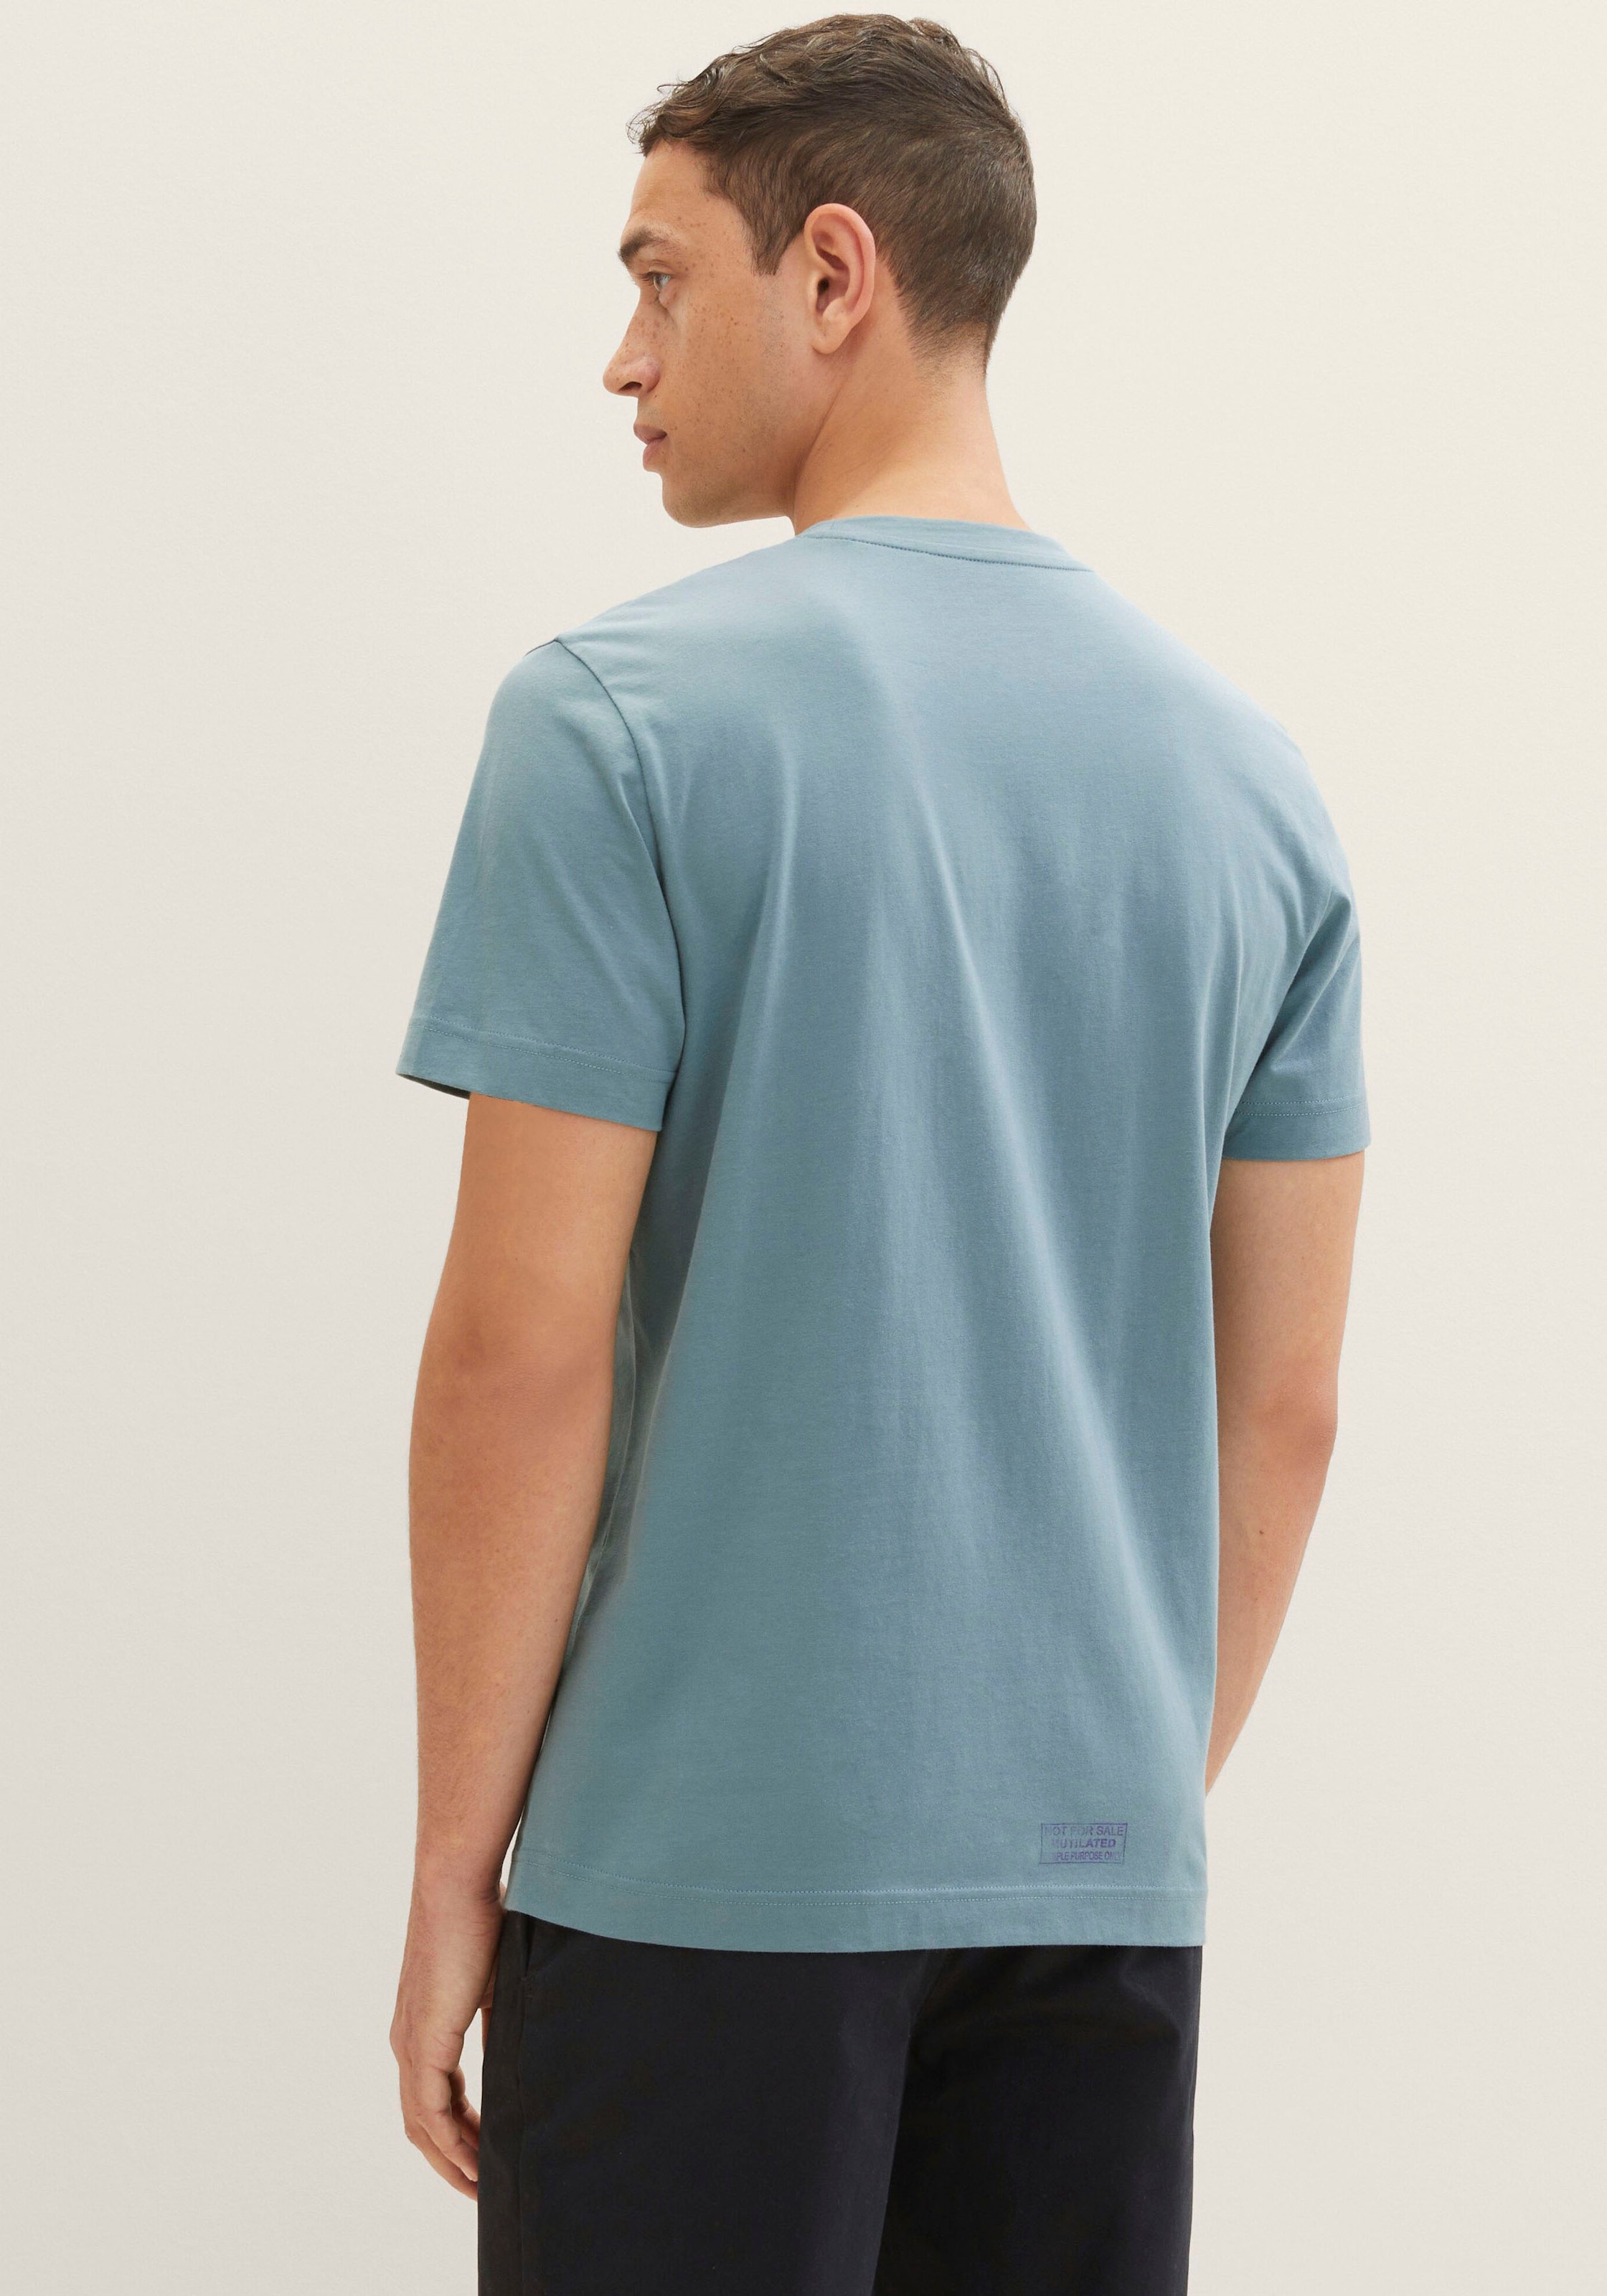 TOM TAILOR T-Shirt, 1x mit großem Print 1x mit kleinem Logo auf der Brust